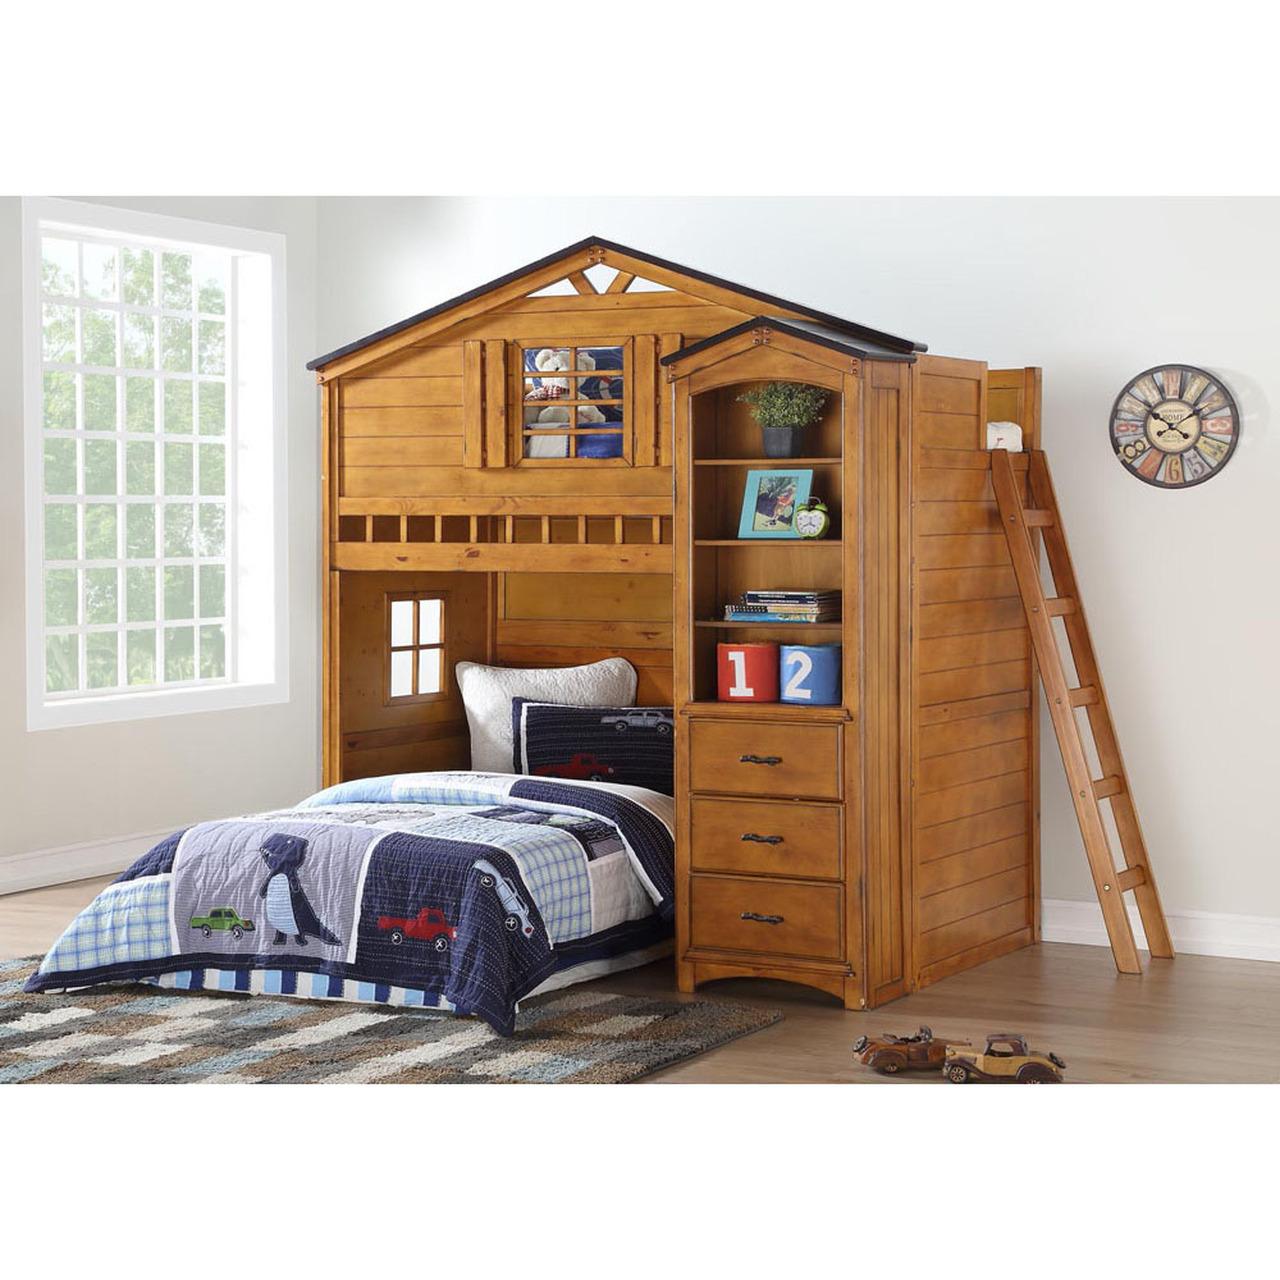 

    
Wood Rustic Oak Loft Bed + Bookshelf by Acme Tree House 10160-2pcs
